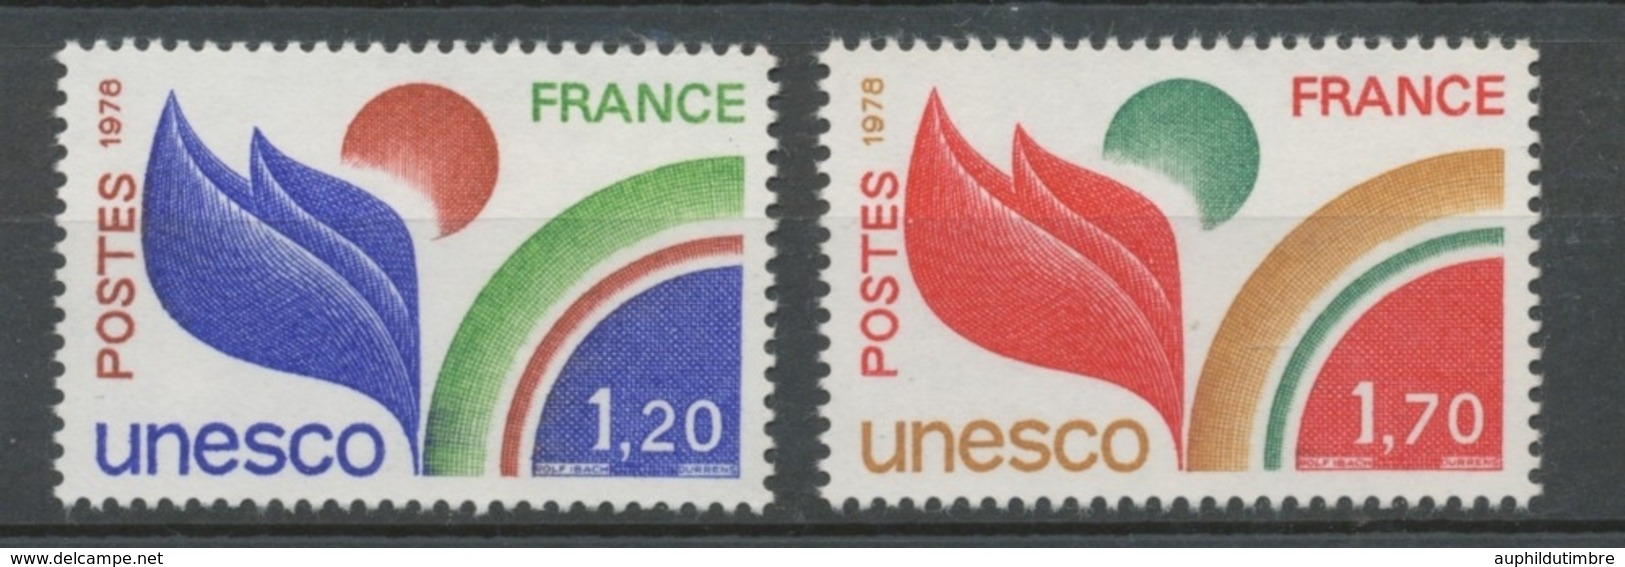 Service N°56-57 Série UNESCO.  2 Valeurs ZS56A - Mint/Hinged